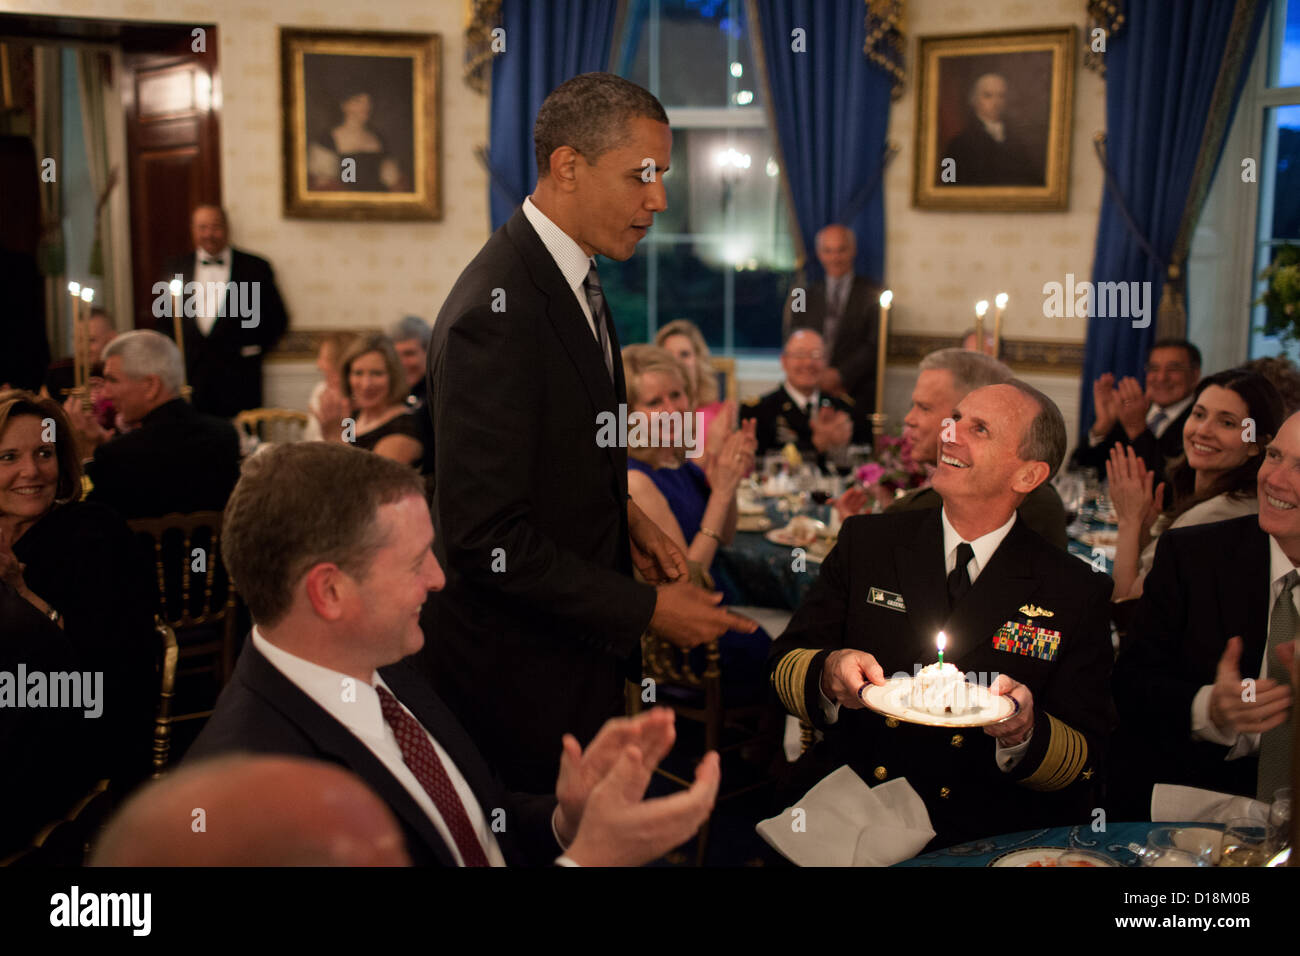 El presidente Barack Obama presenta una tarta de cumpleaños para el Almirante Jonathan Greenert, Jefe de Operaciones Navales, durante una cena de Foto de stock